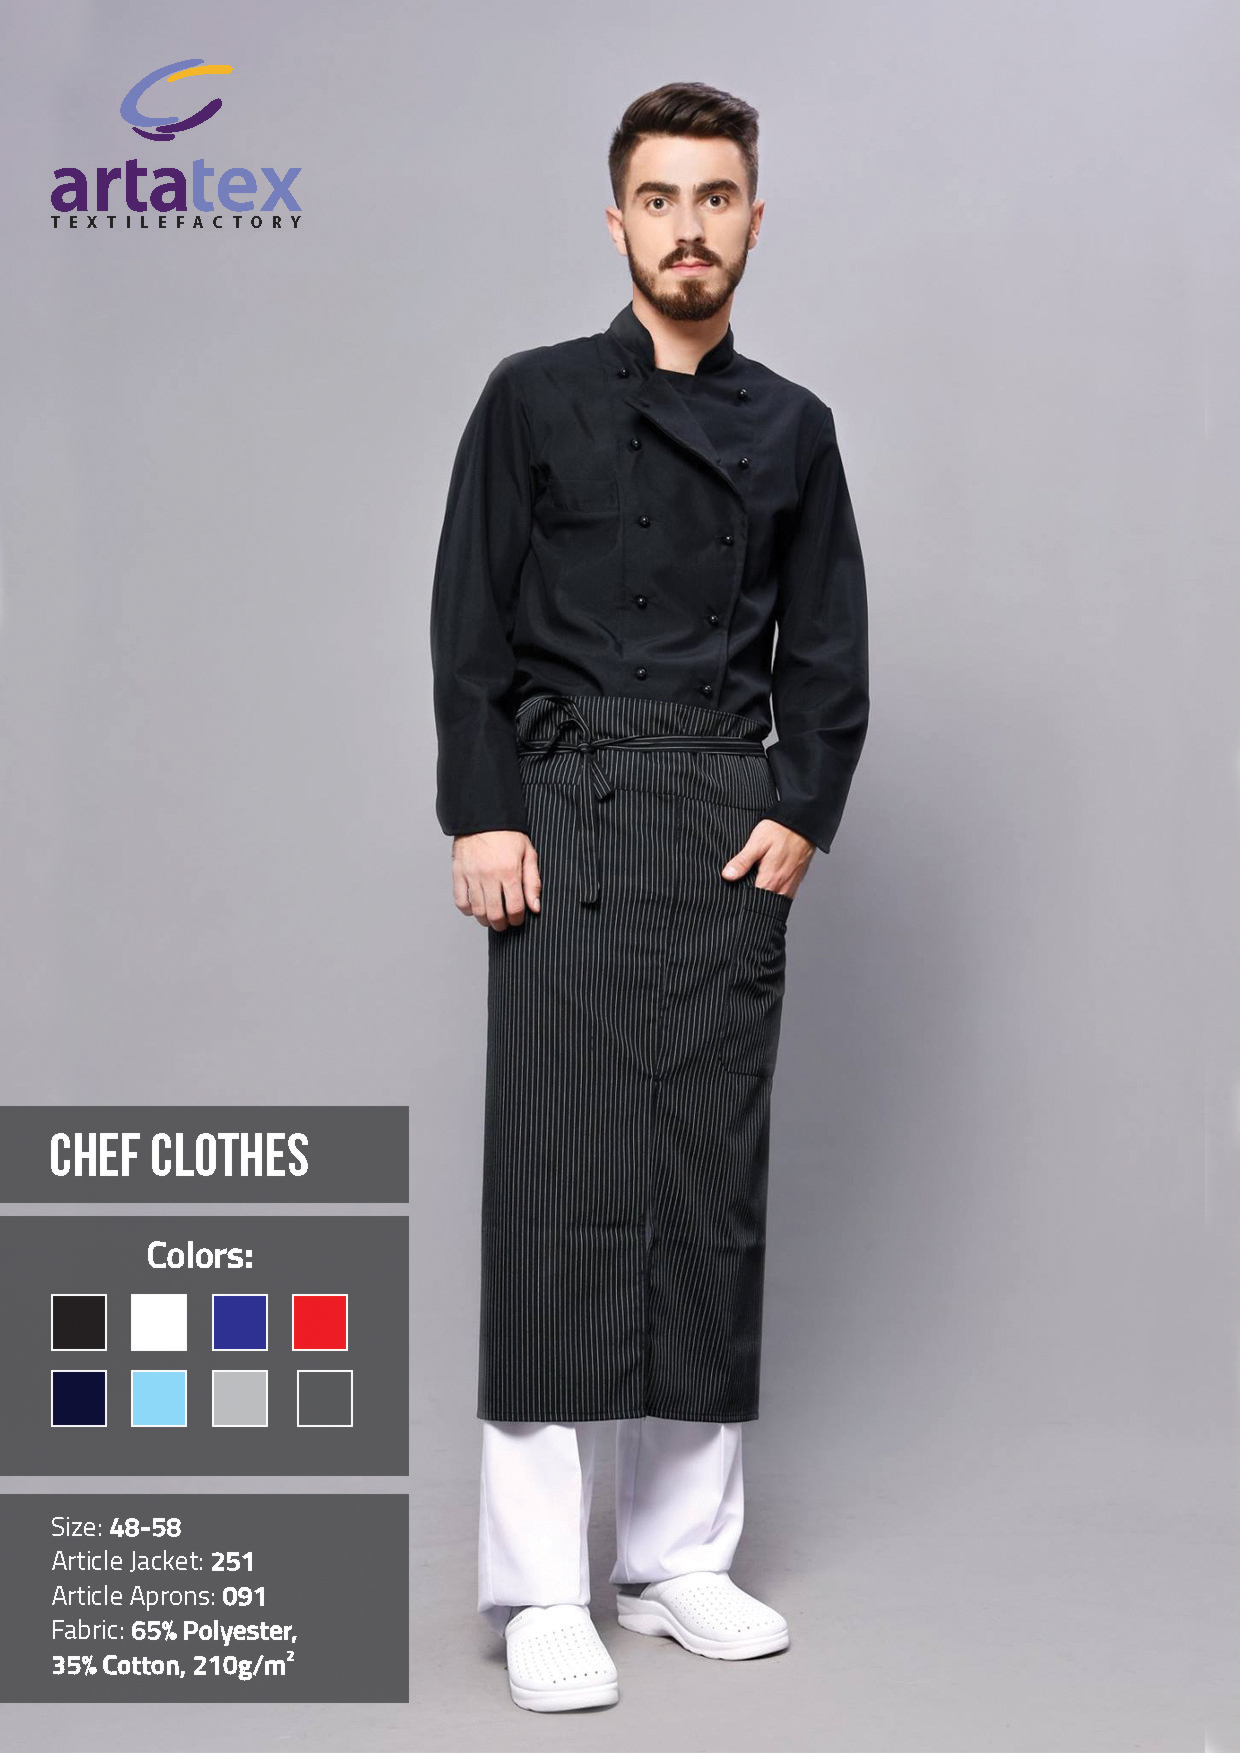 ArtaTex - Chef Clothes